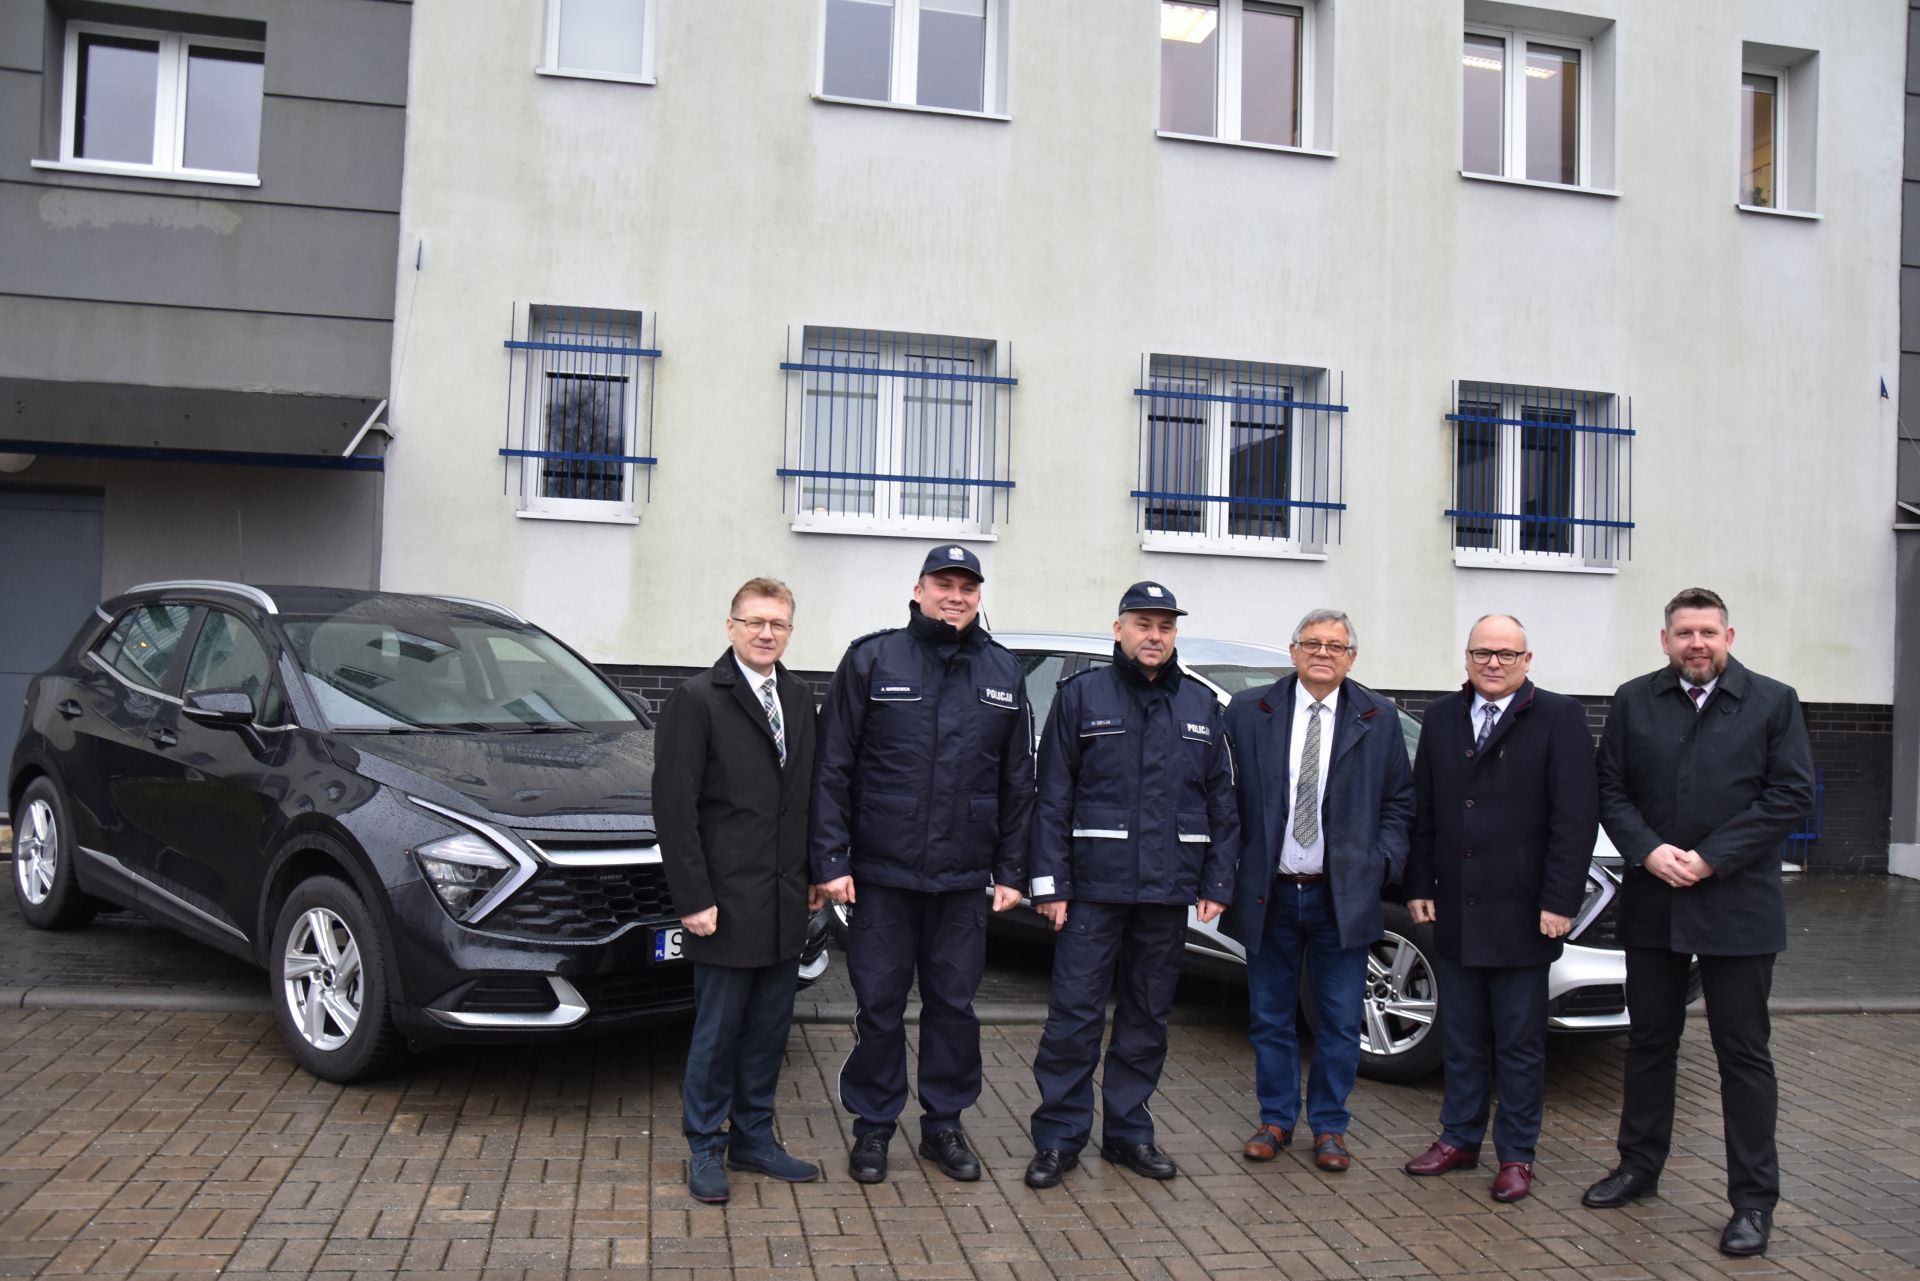 Nowe samochody policyjne, spotkanie komendantów policji w Wodzisławiu Śl. z samorządowcami, którzy przekazali środki na zakup